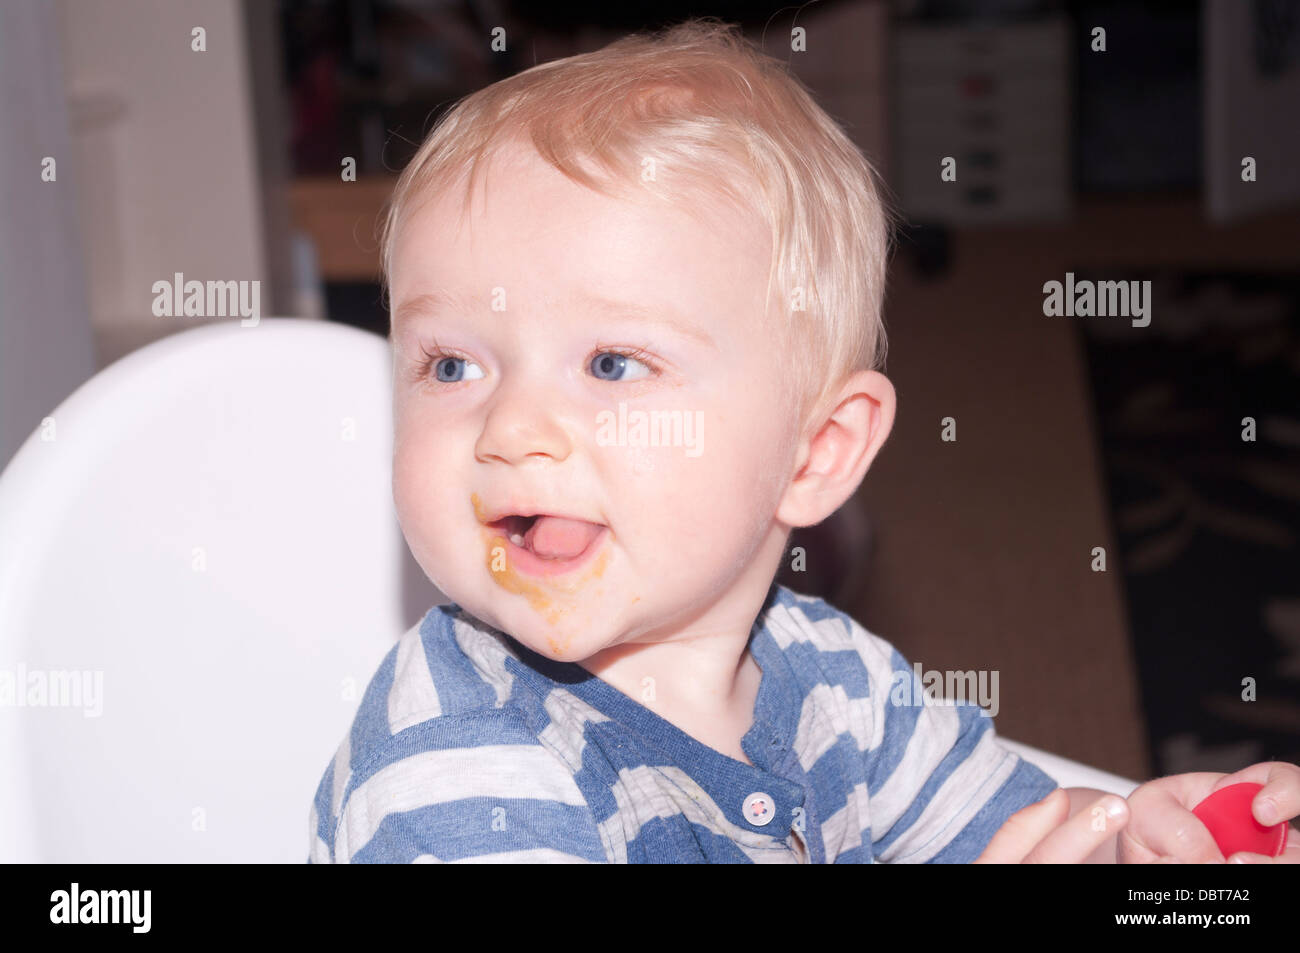 6 mois du garçon avec sa bouche ronde alimentaire Banque D'Images